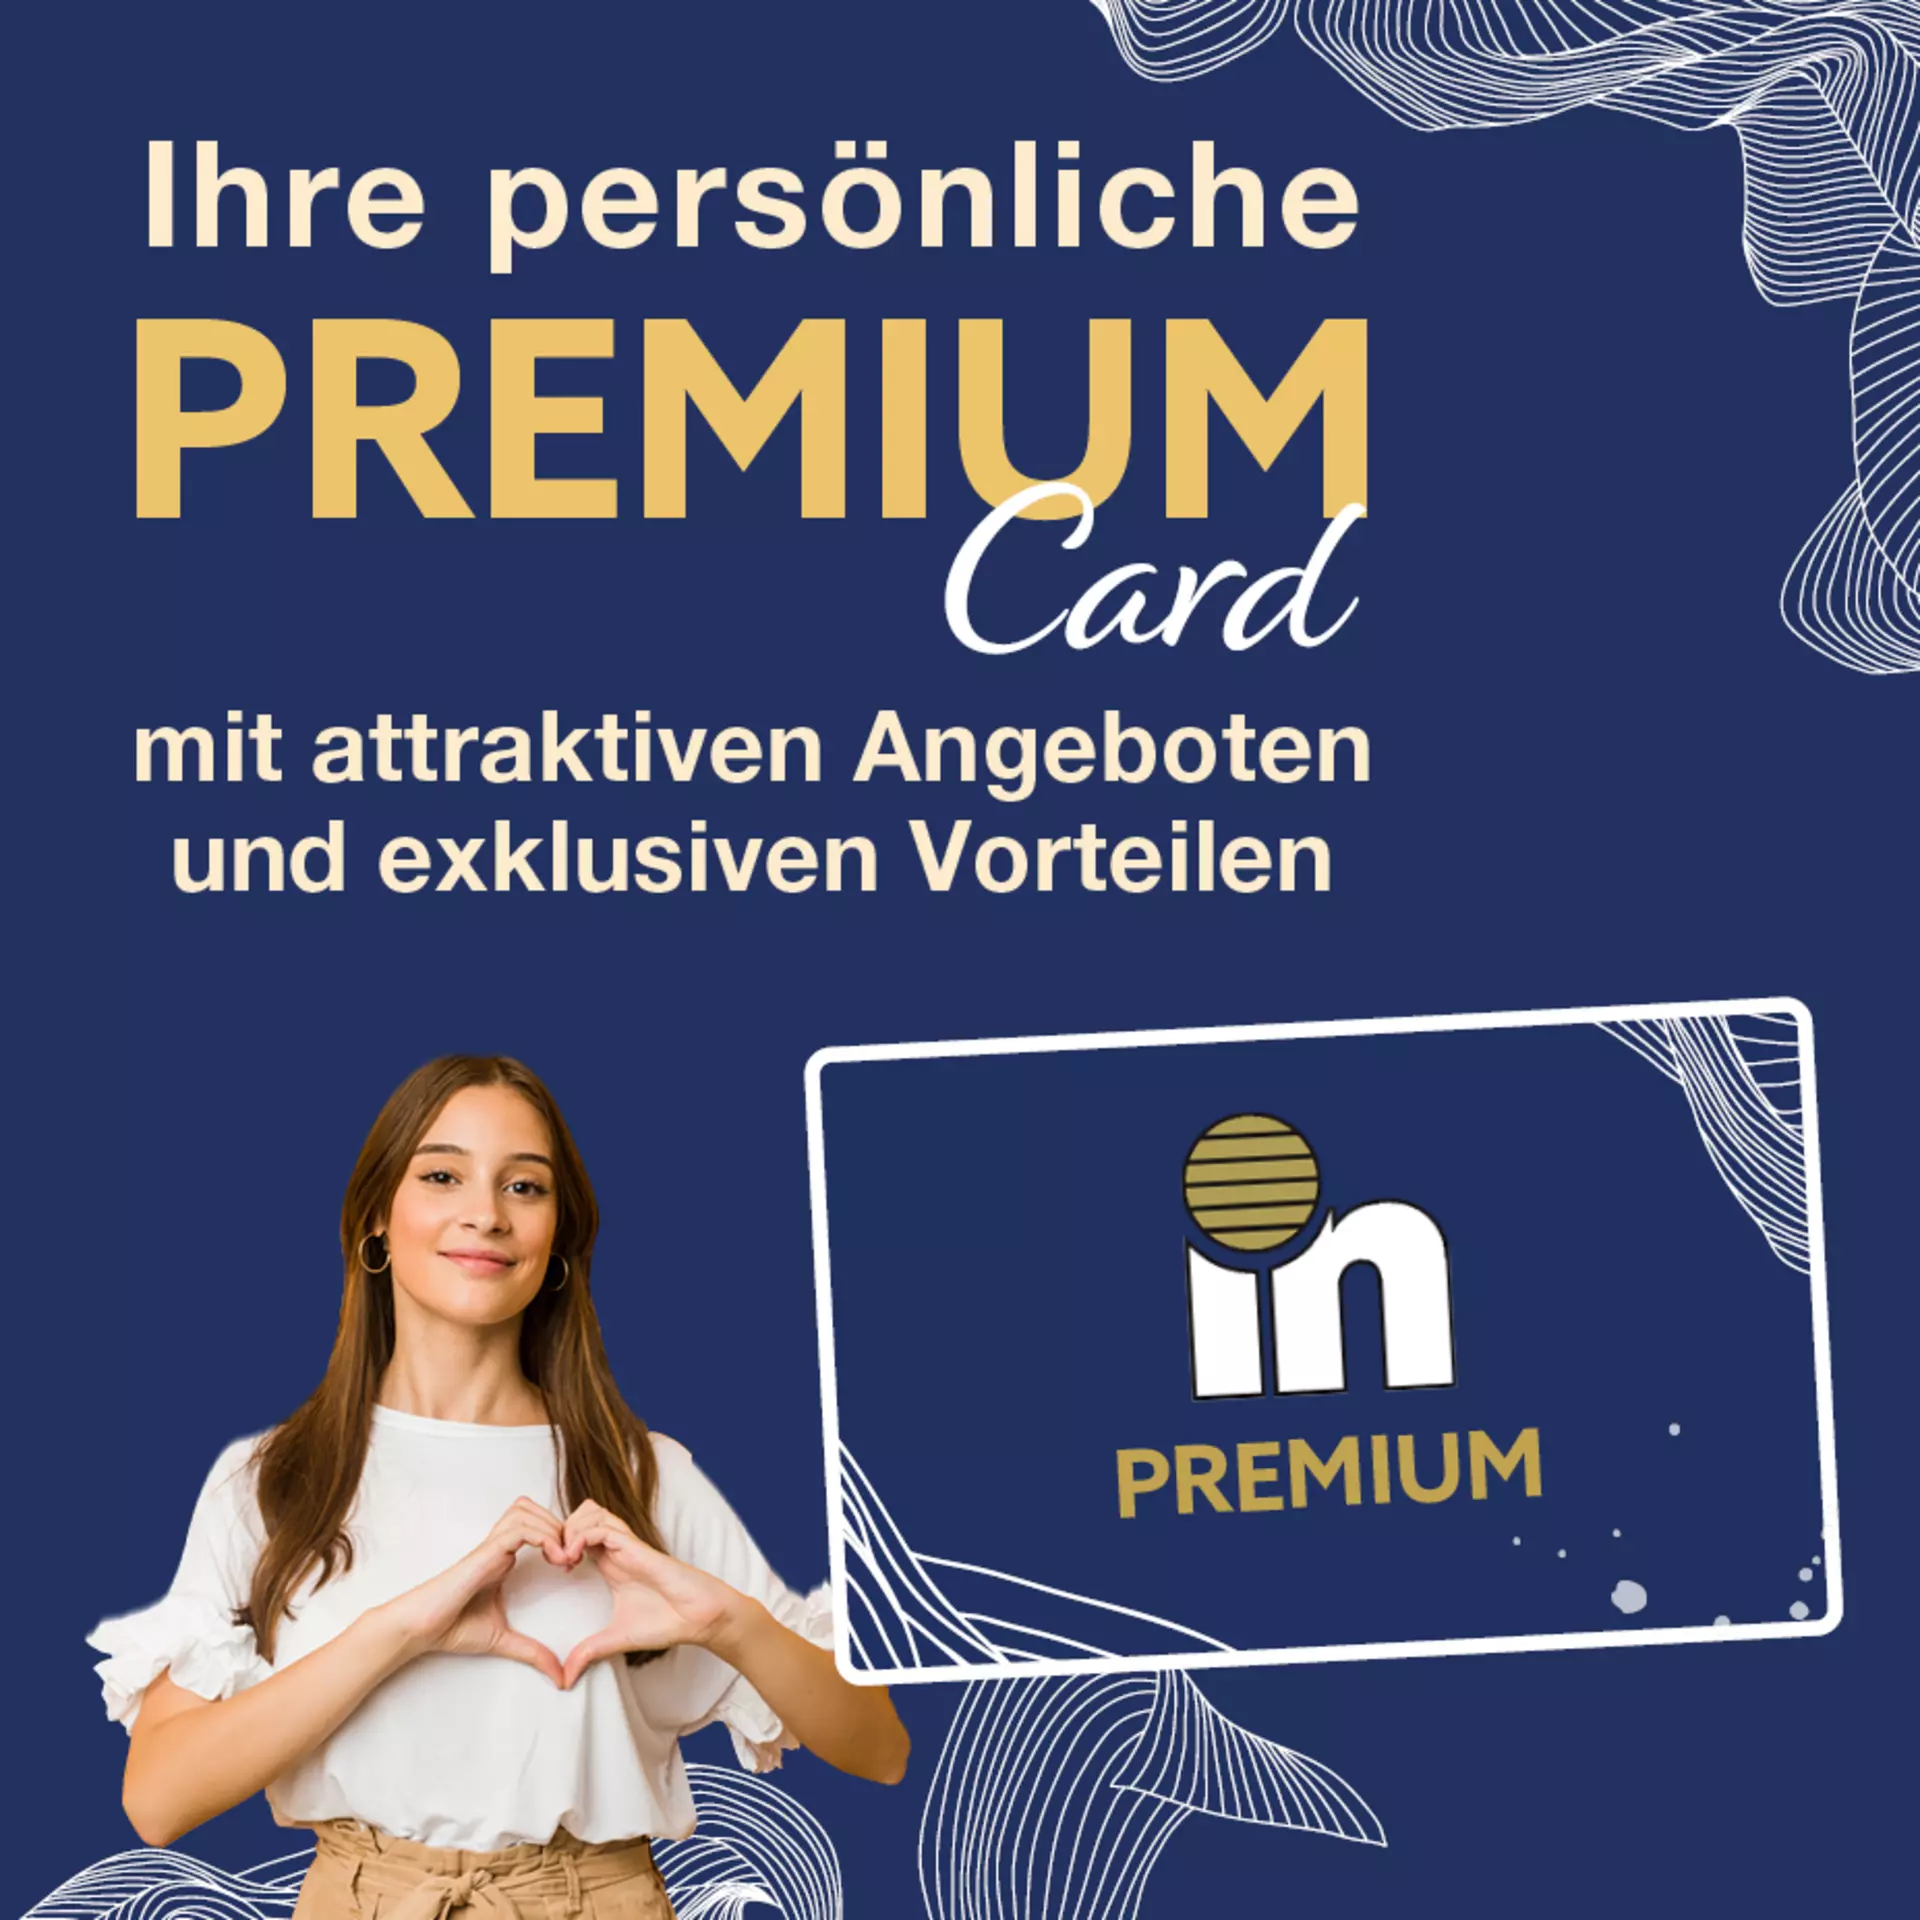 Ihre Persönliche Premium Card von Möbel Inhofer - jetzt Kundenkarte holen und von attraktiven Angeboten sowie exklusiven Vorteilen profitieren!